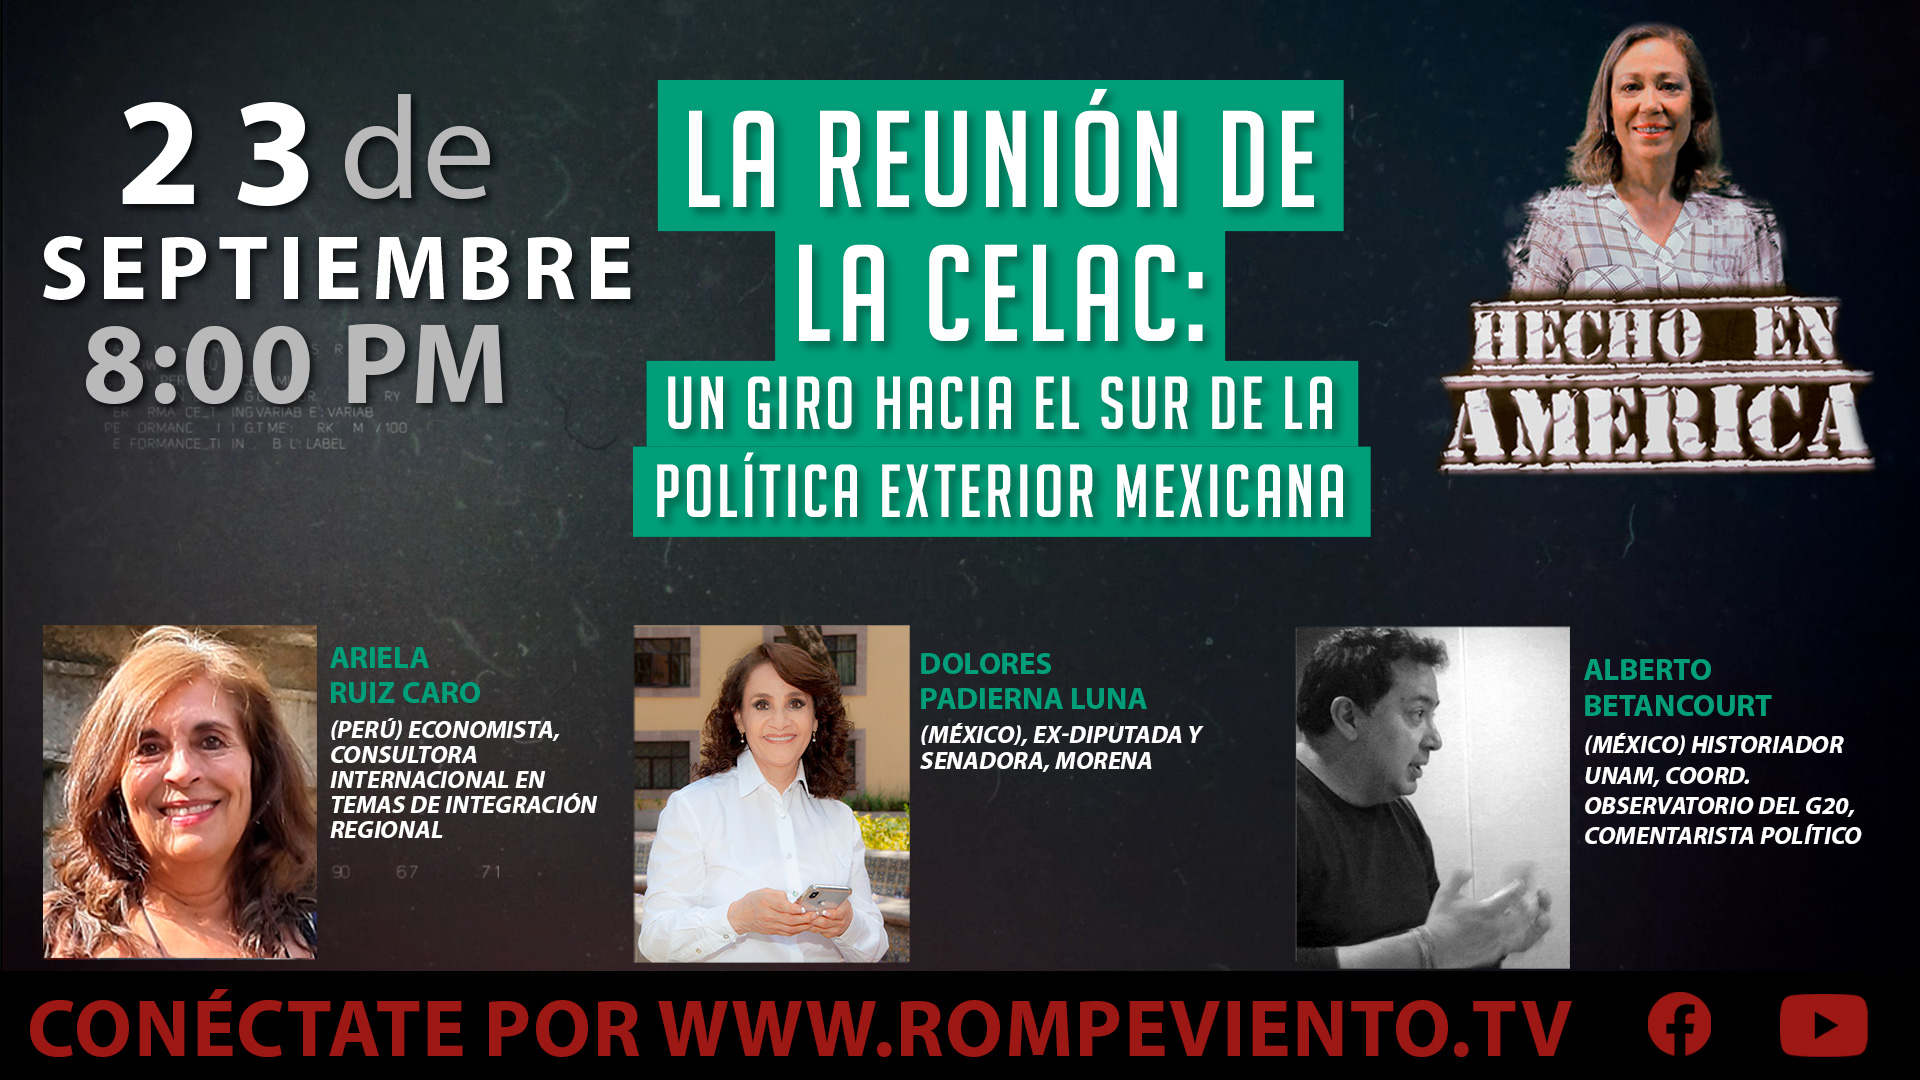 La reunión de la CELAC: Un giro hacia el sur de la política exterior mexicana - Hecho en América